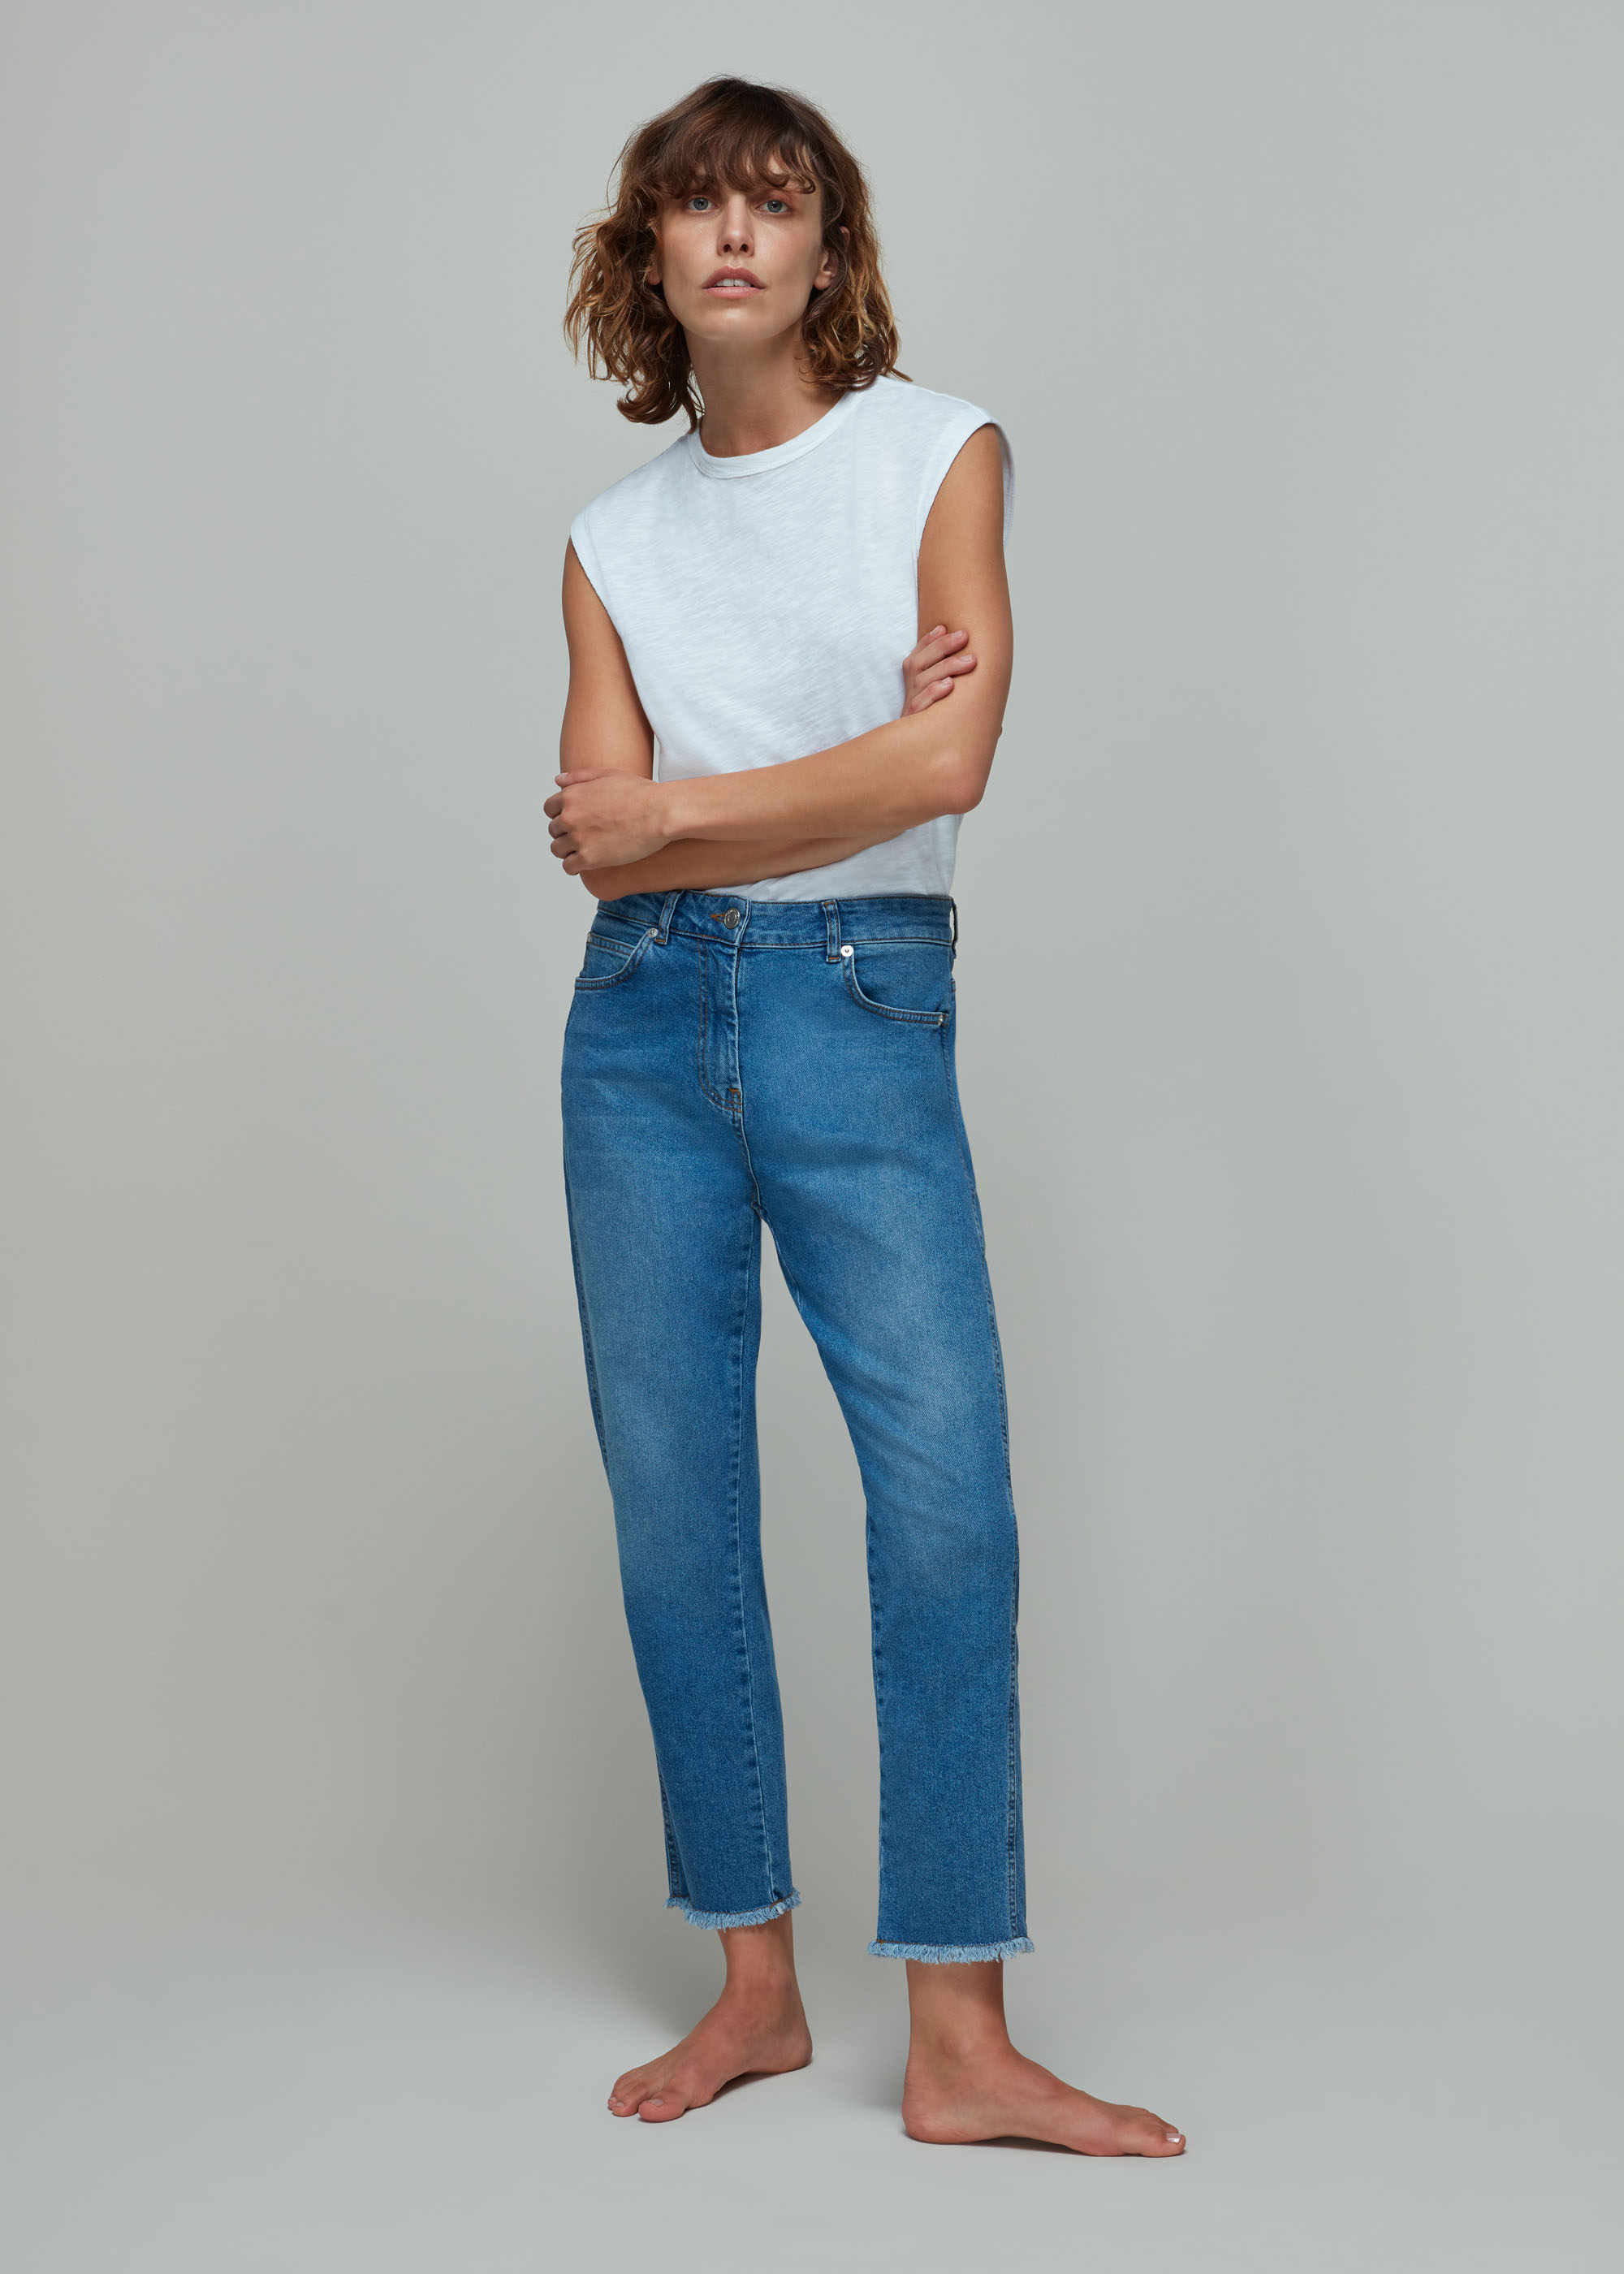 Jeans For Women | Flared, Straight Leg & Barrel | Whistles UK